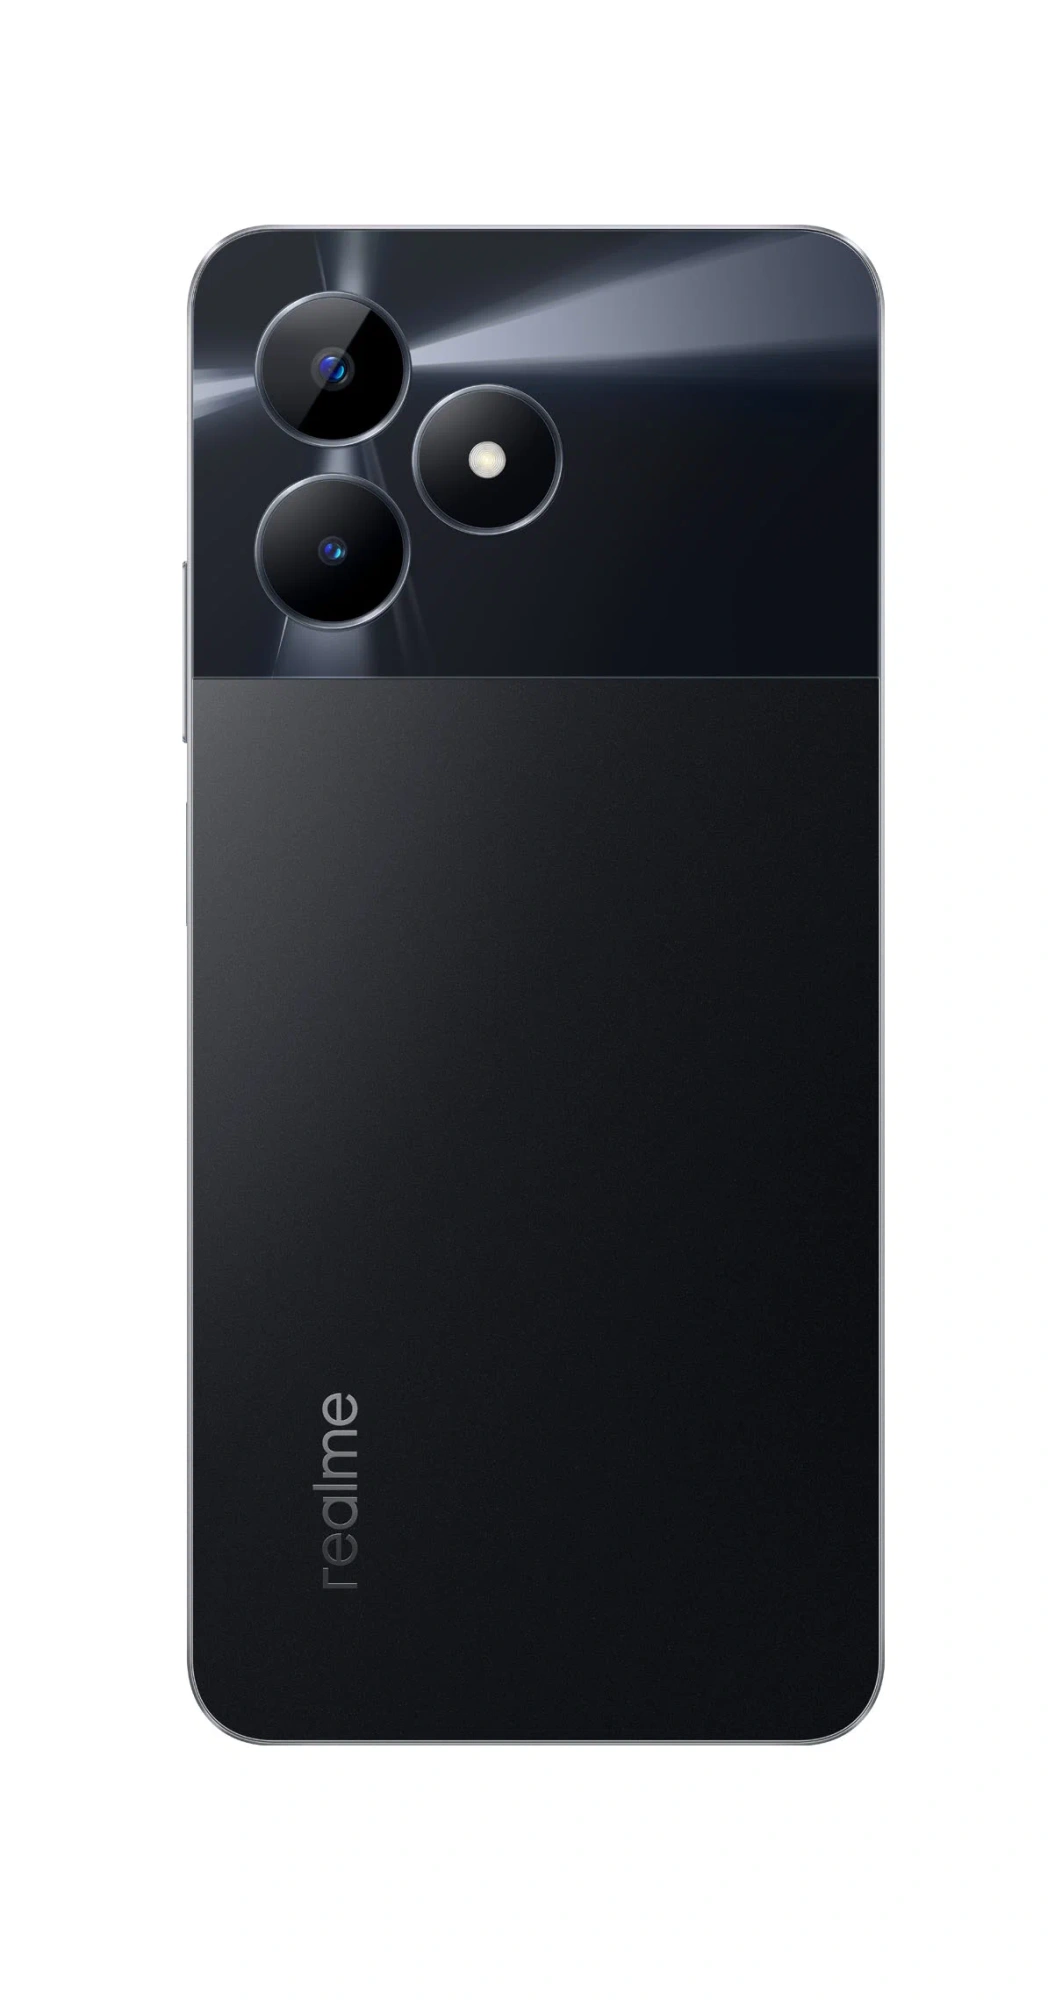 смартфон realme c51 4/64 гб, черный